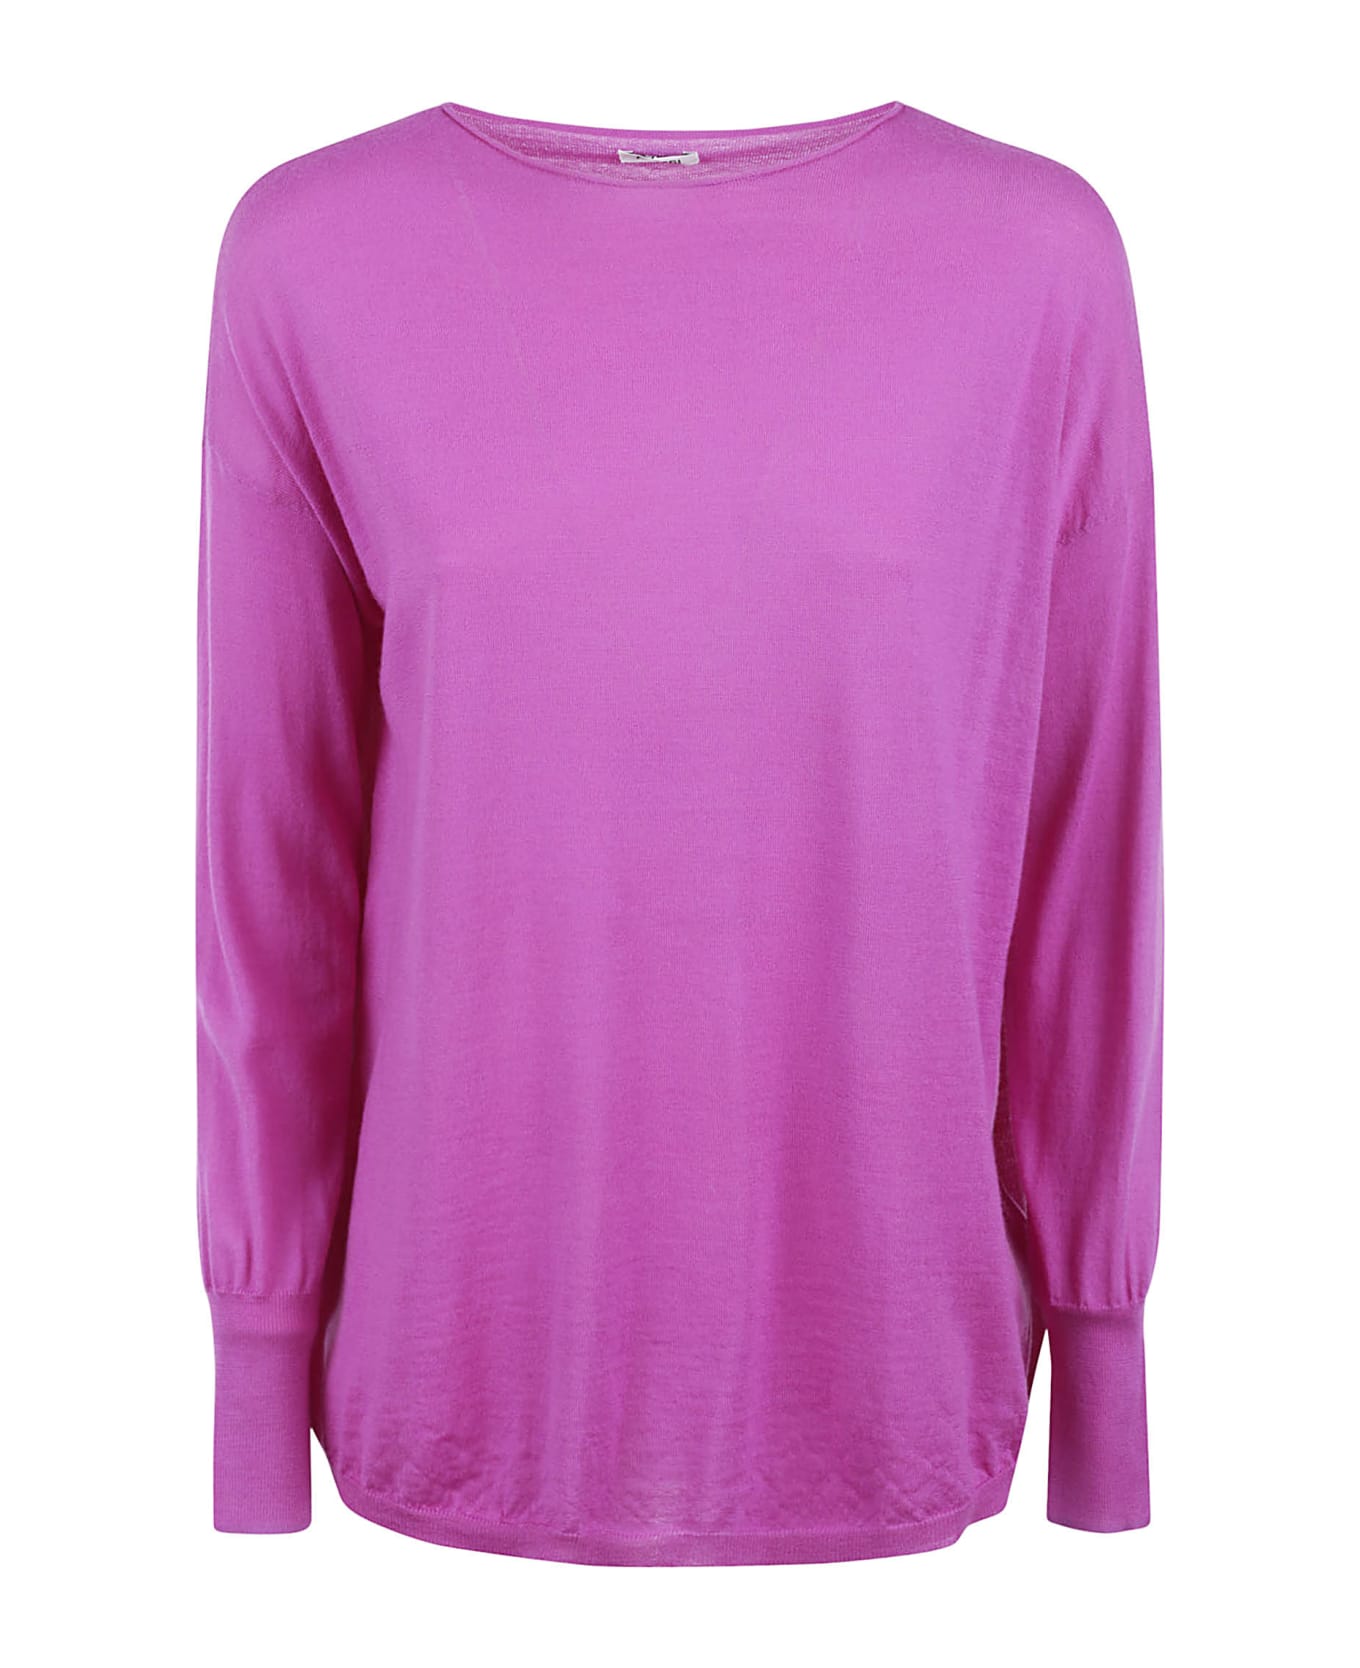 Aspesi Slim Fit Plain Sweater - Fuchsia ニットウェア